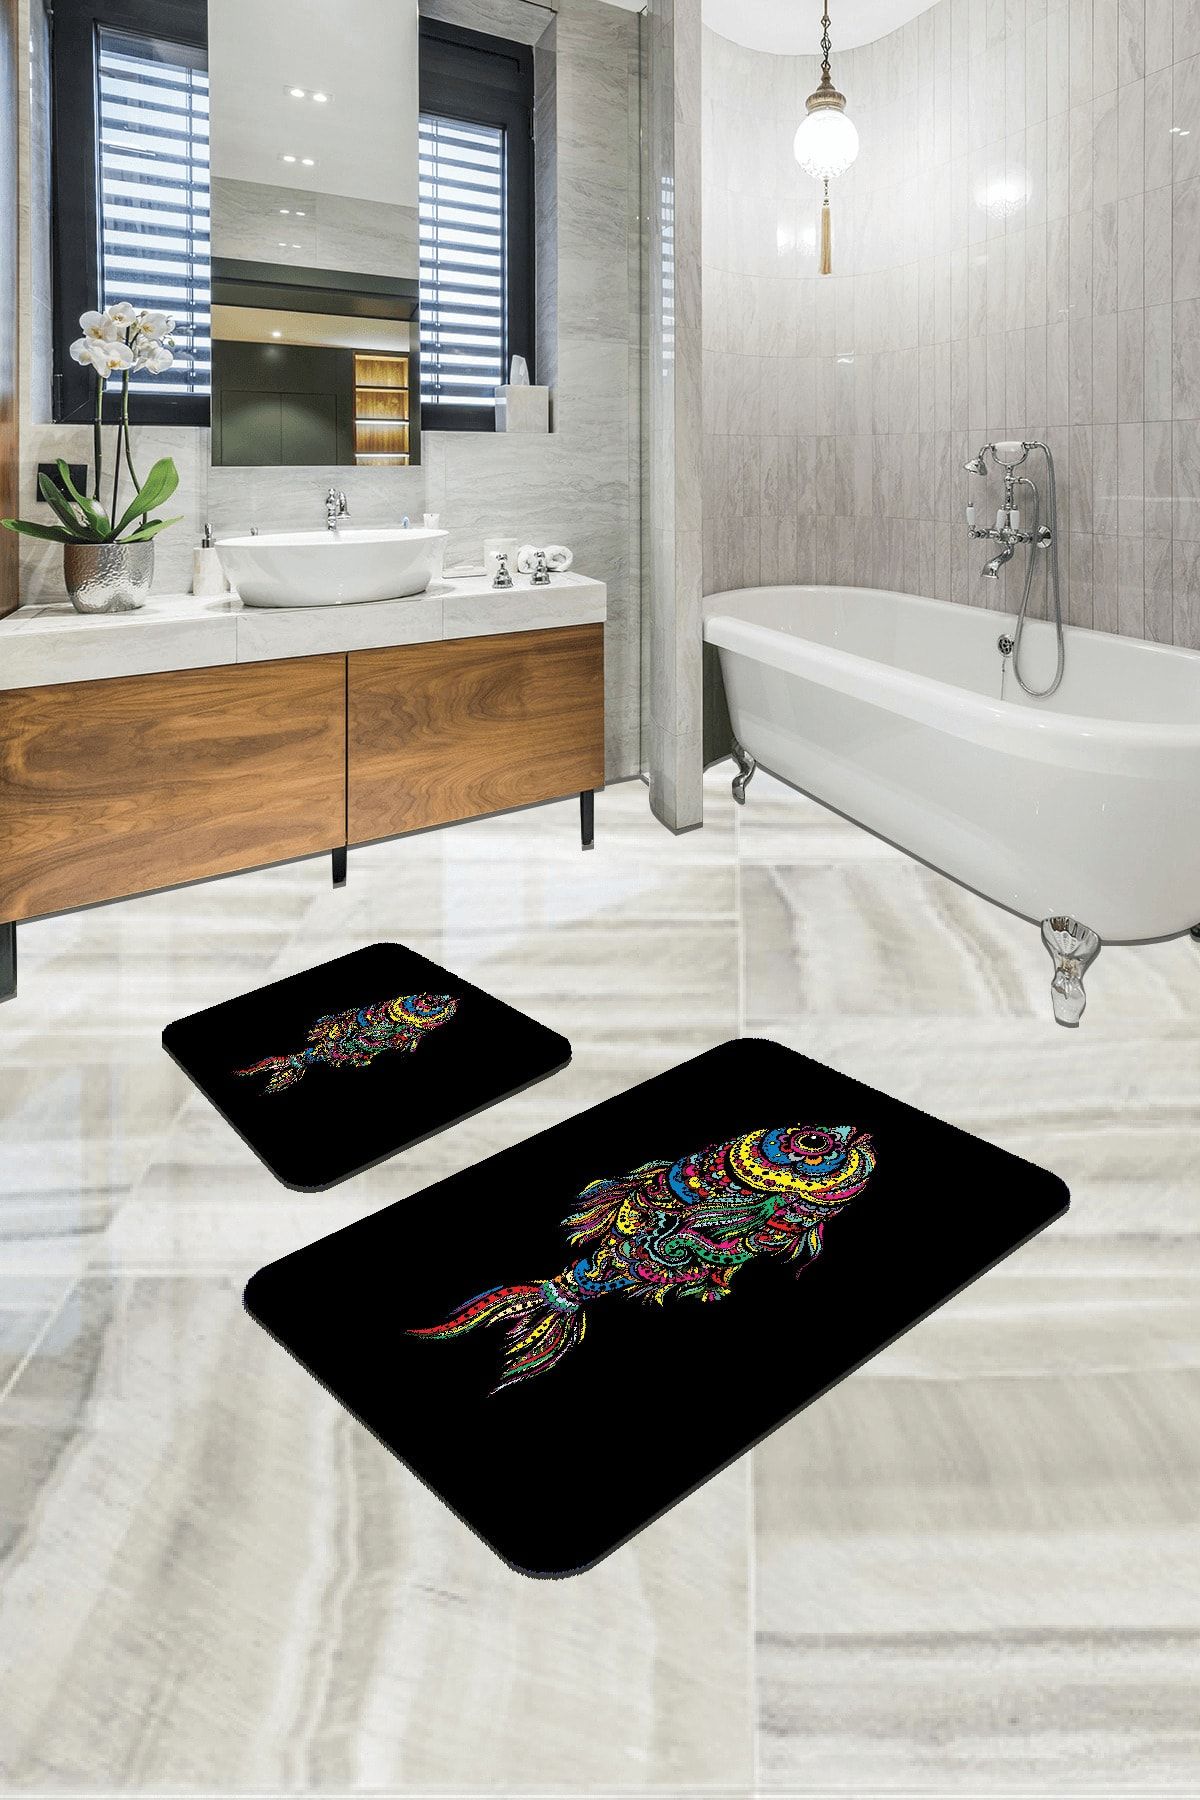 RugViva Dijital Banyo Halısı Klozet Takımı 2'li Paspas Seti Bs204 60x90cm + 60x60cm